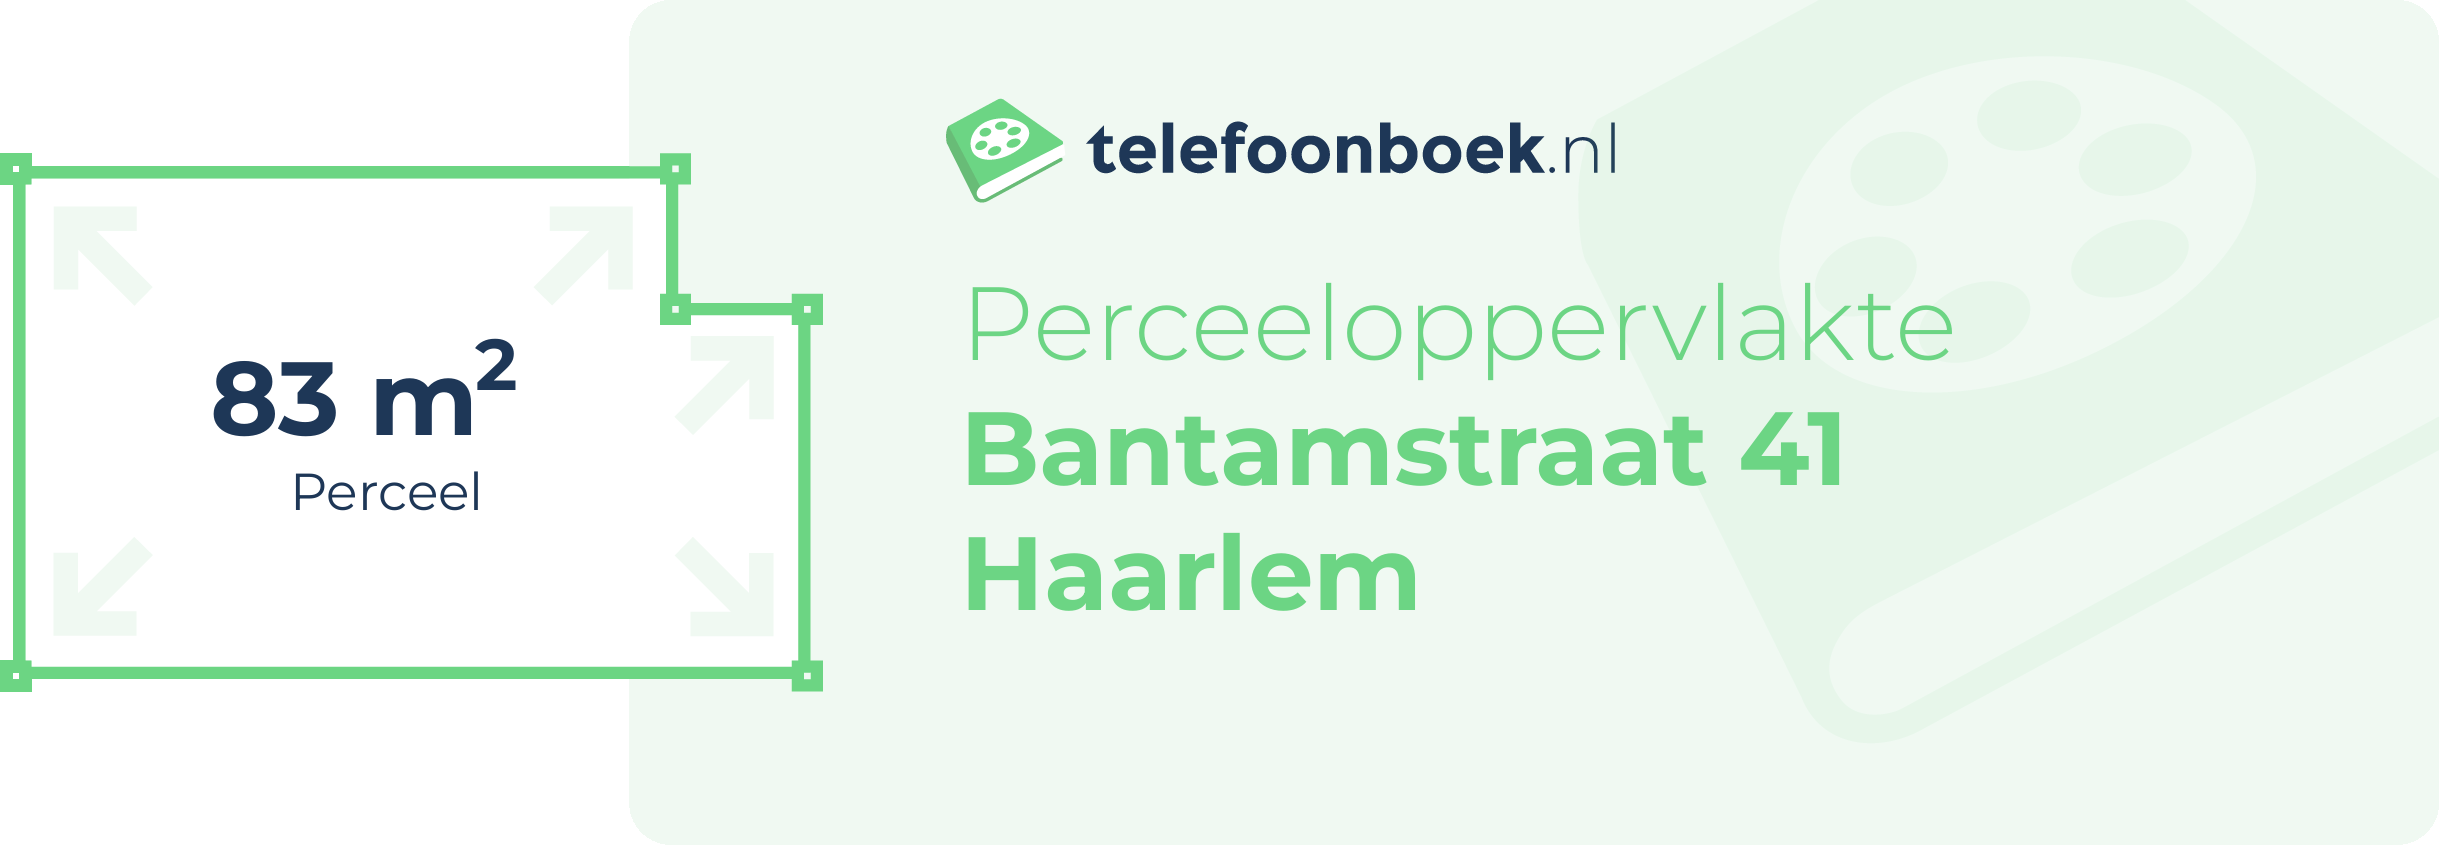 Perceeloppervlakte Bantamstraat 41 Haarlem